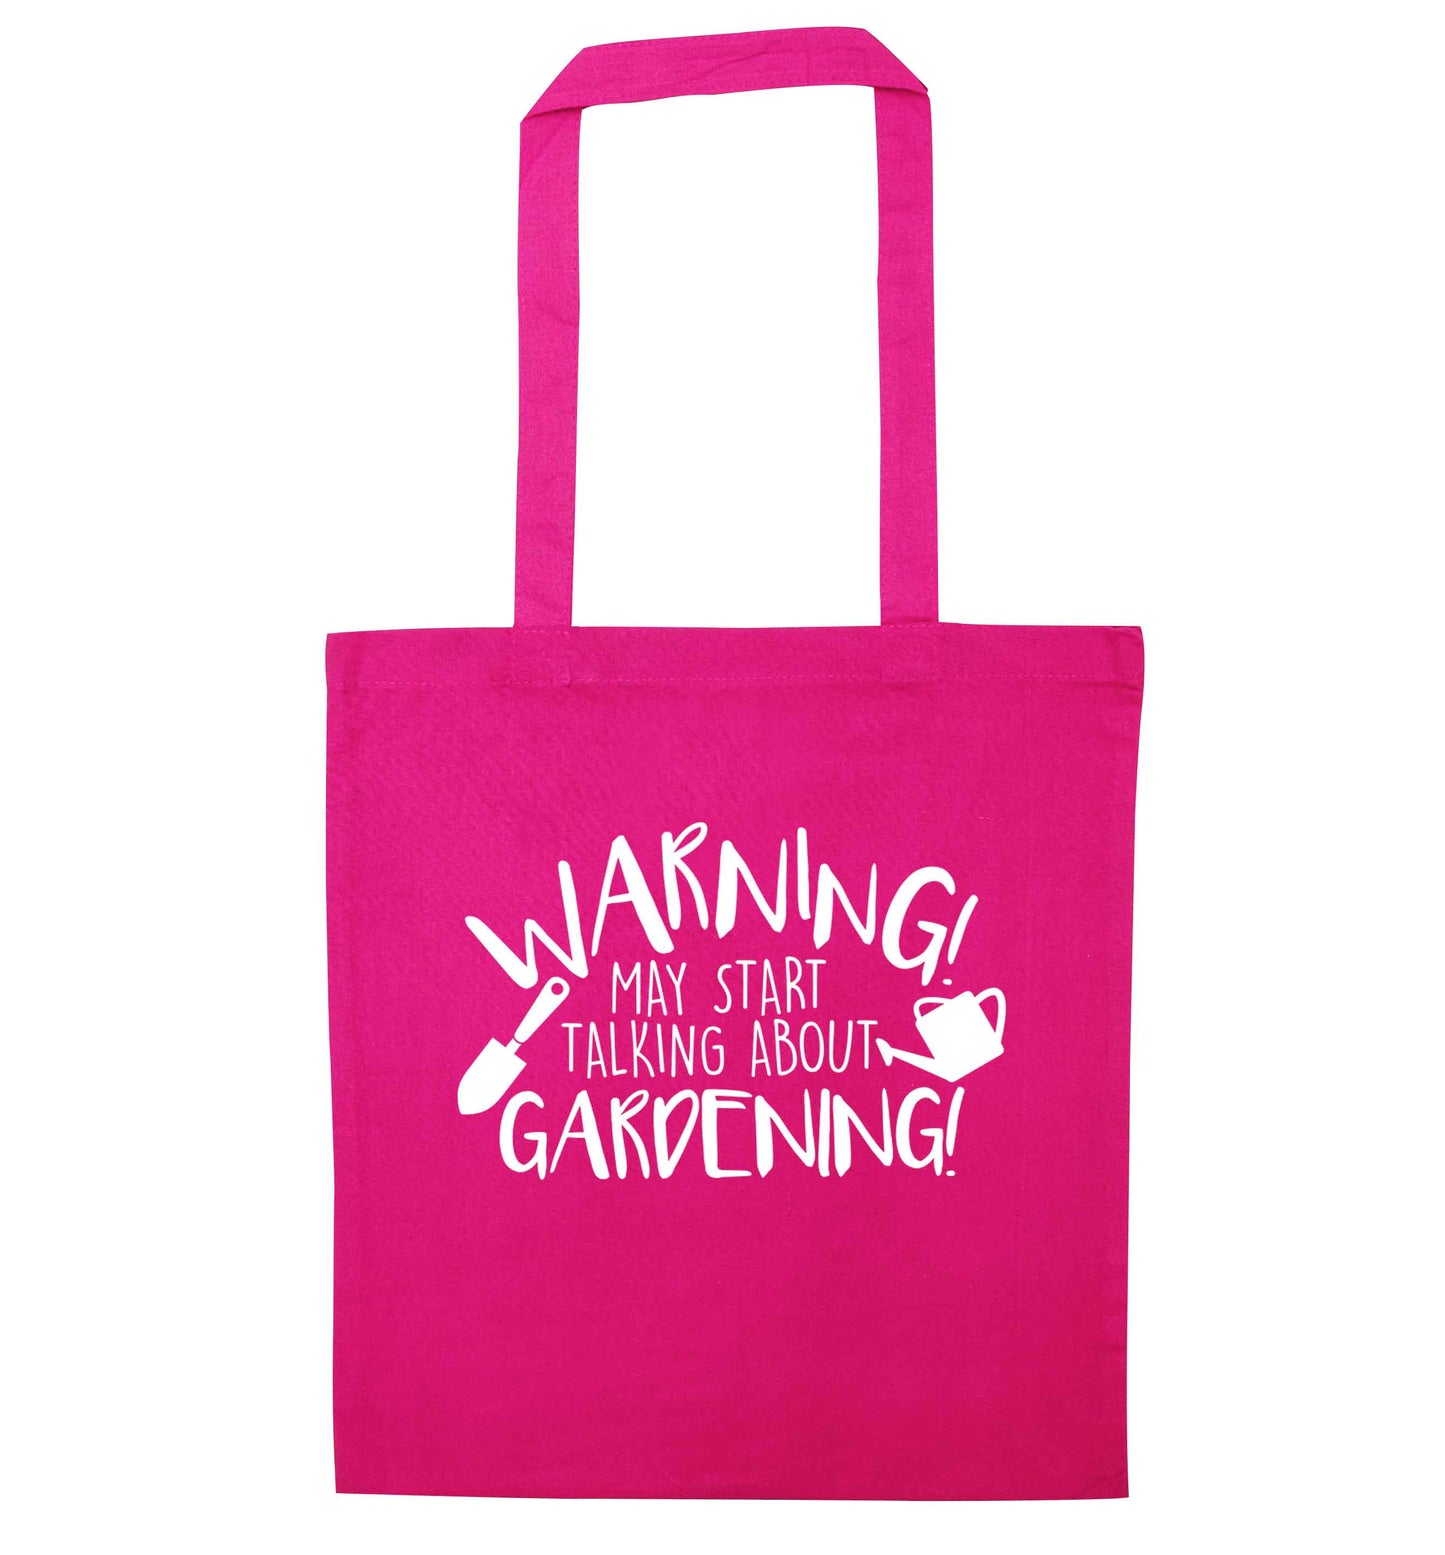 Warning may start talking about gardening pink tote bag